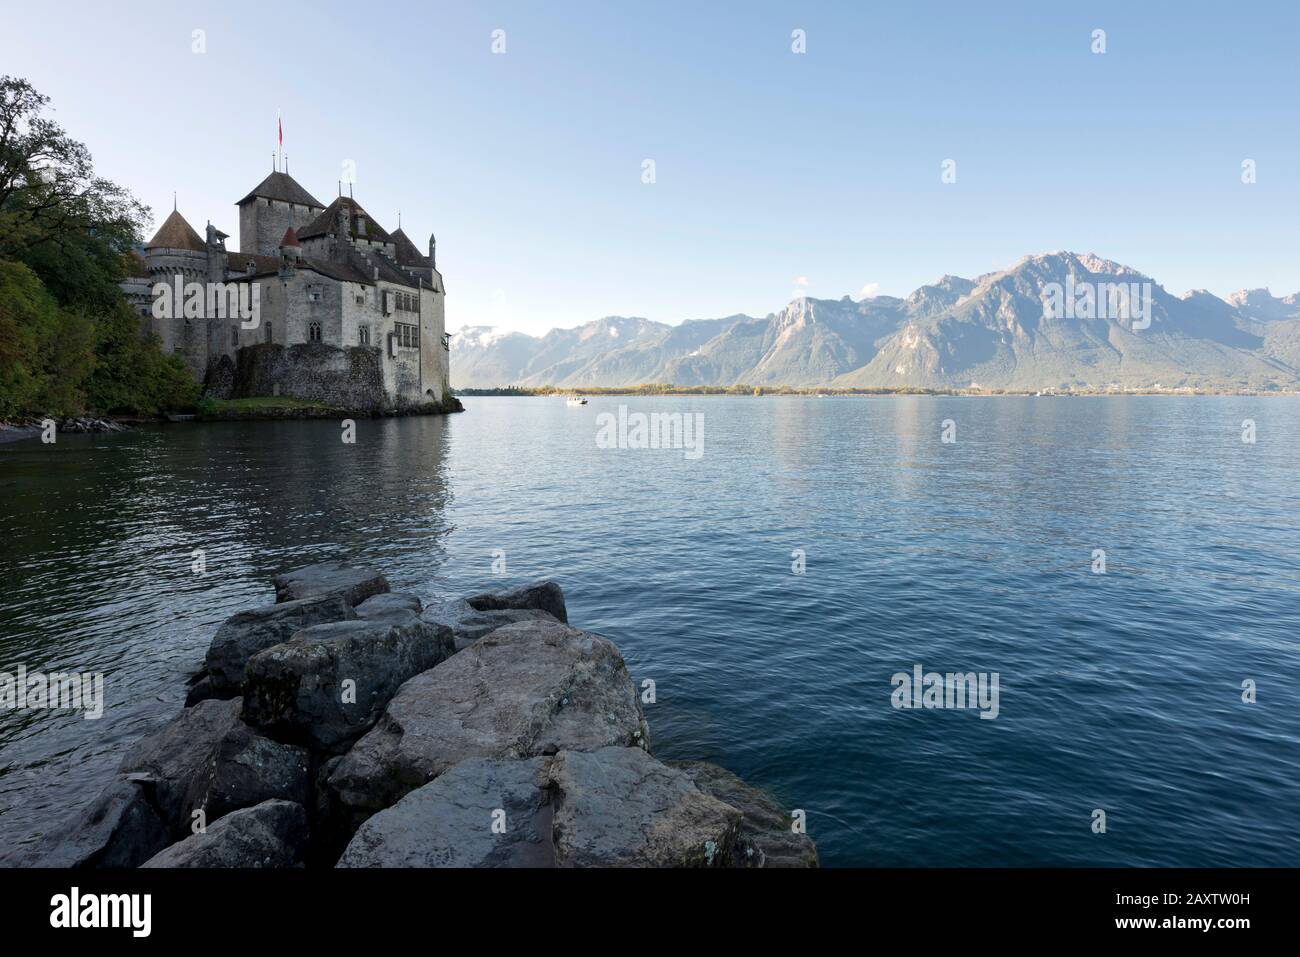 Switzerland, Vaud, Waadt, Montreux, Veytaux, Château de Chillon, Schloss, castle, Lac Léman, Genfer See, Geneva Lake, automne, Herbst, autumn Stock Photo